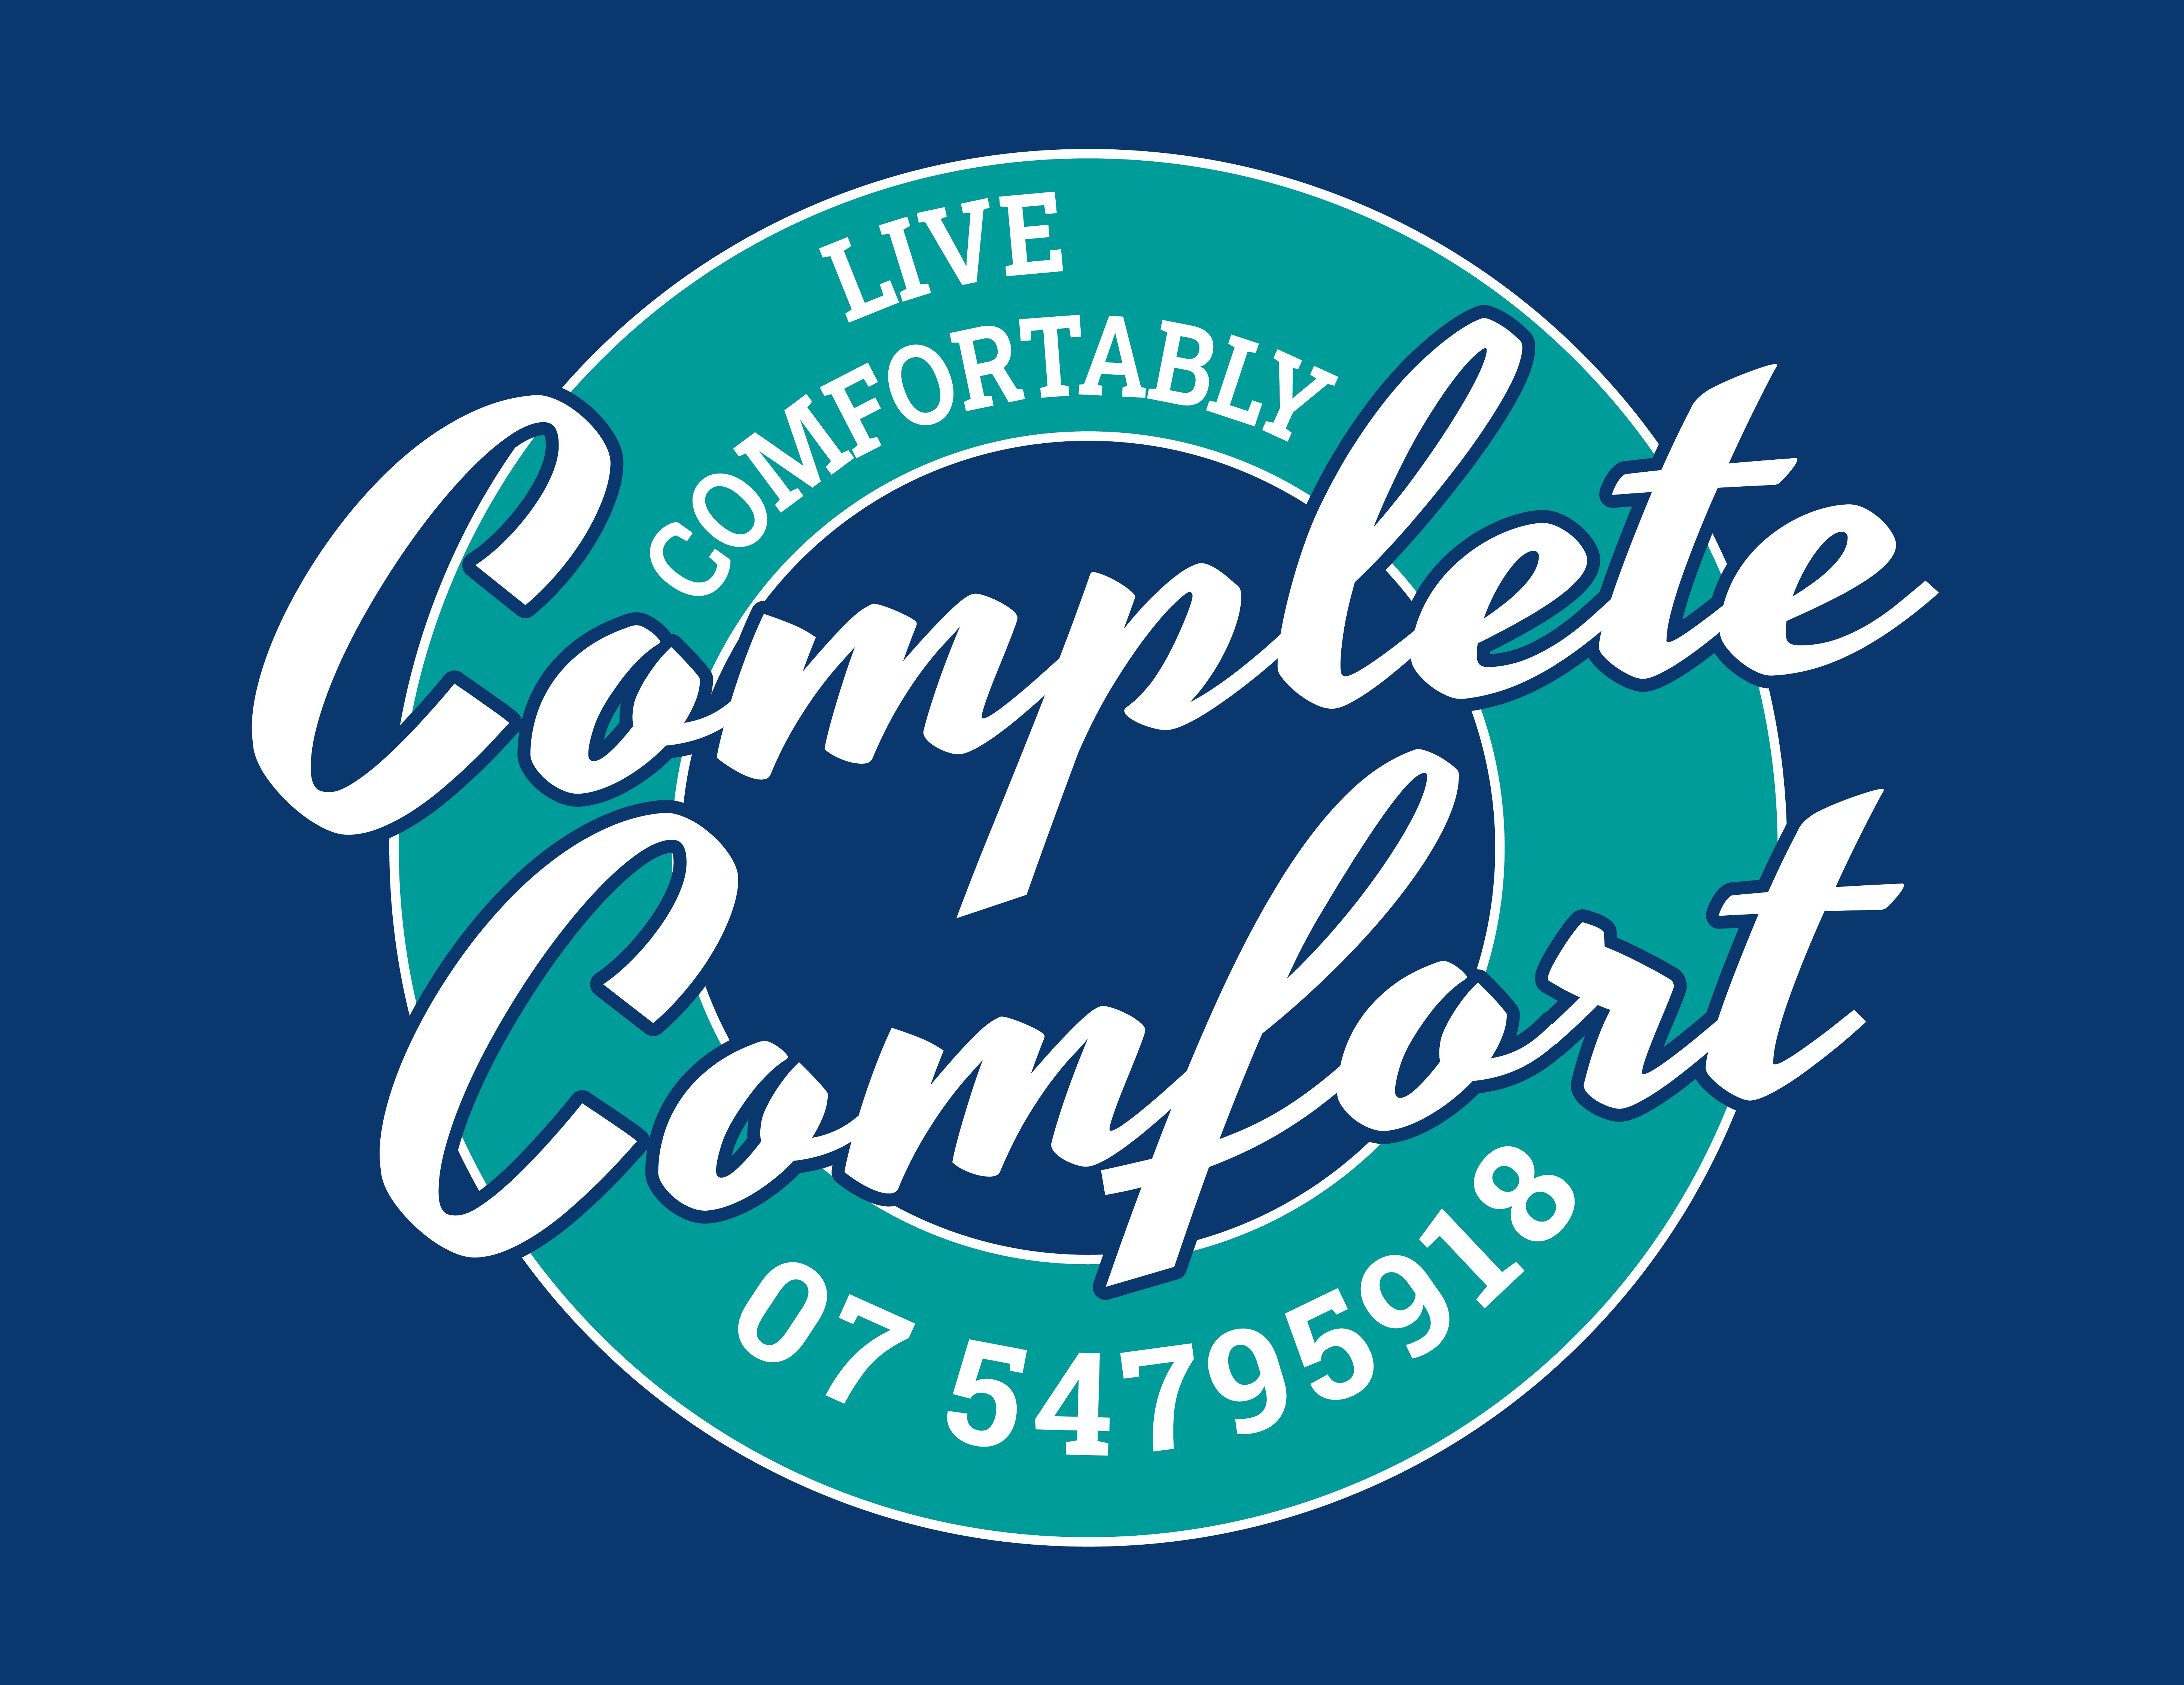 Complete Comfort